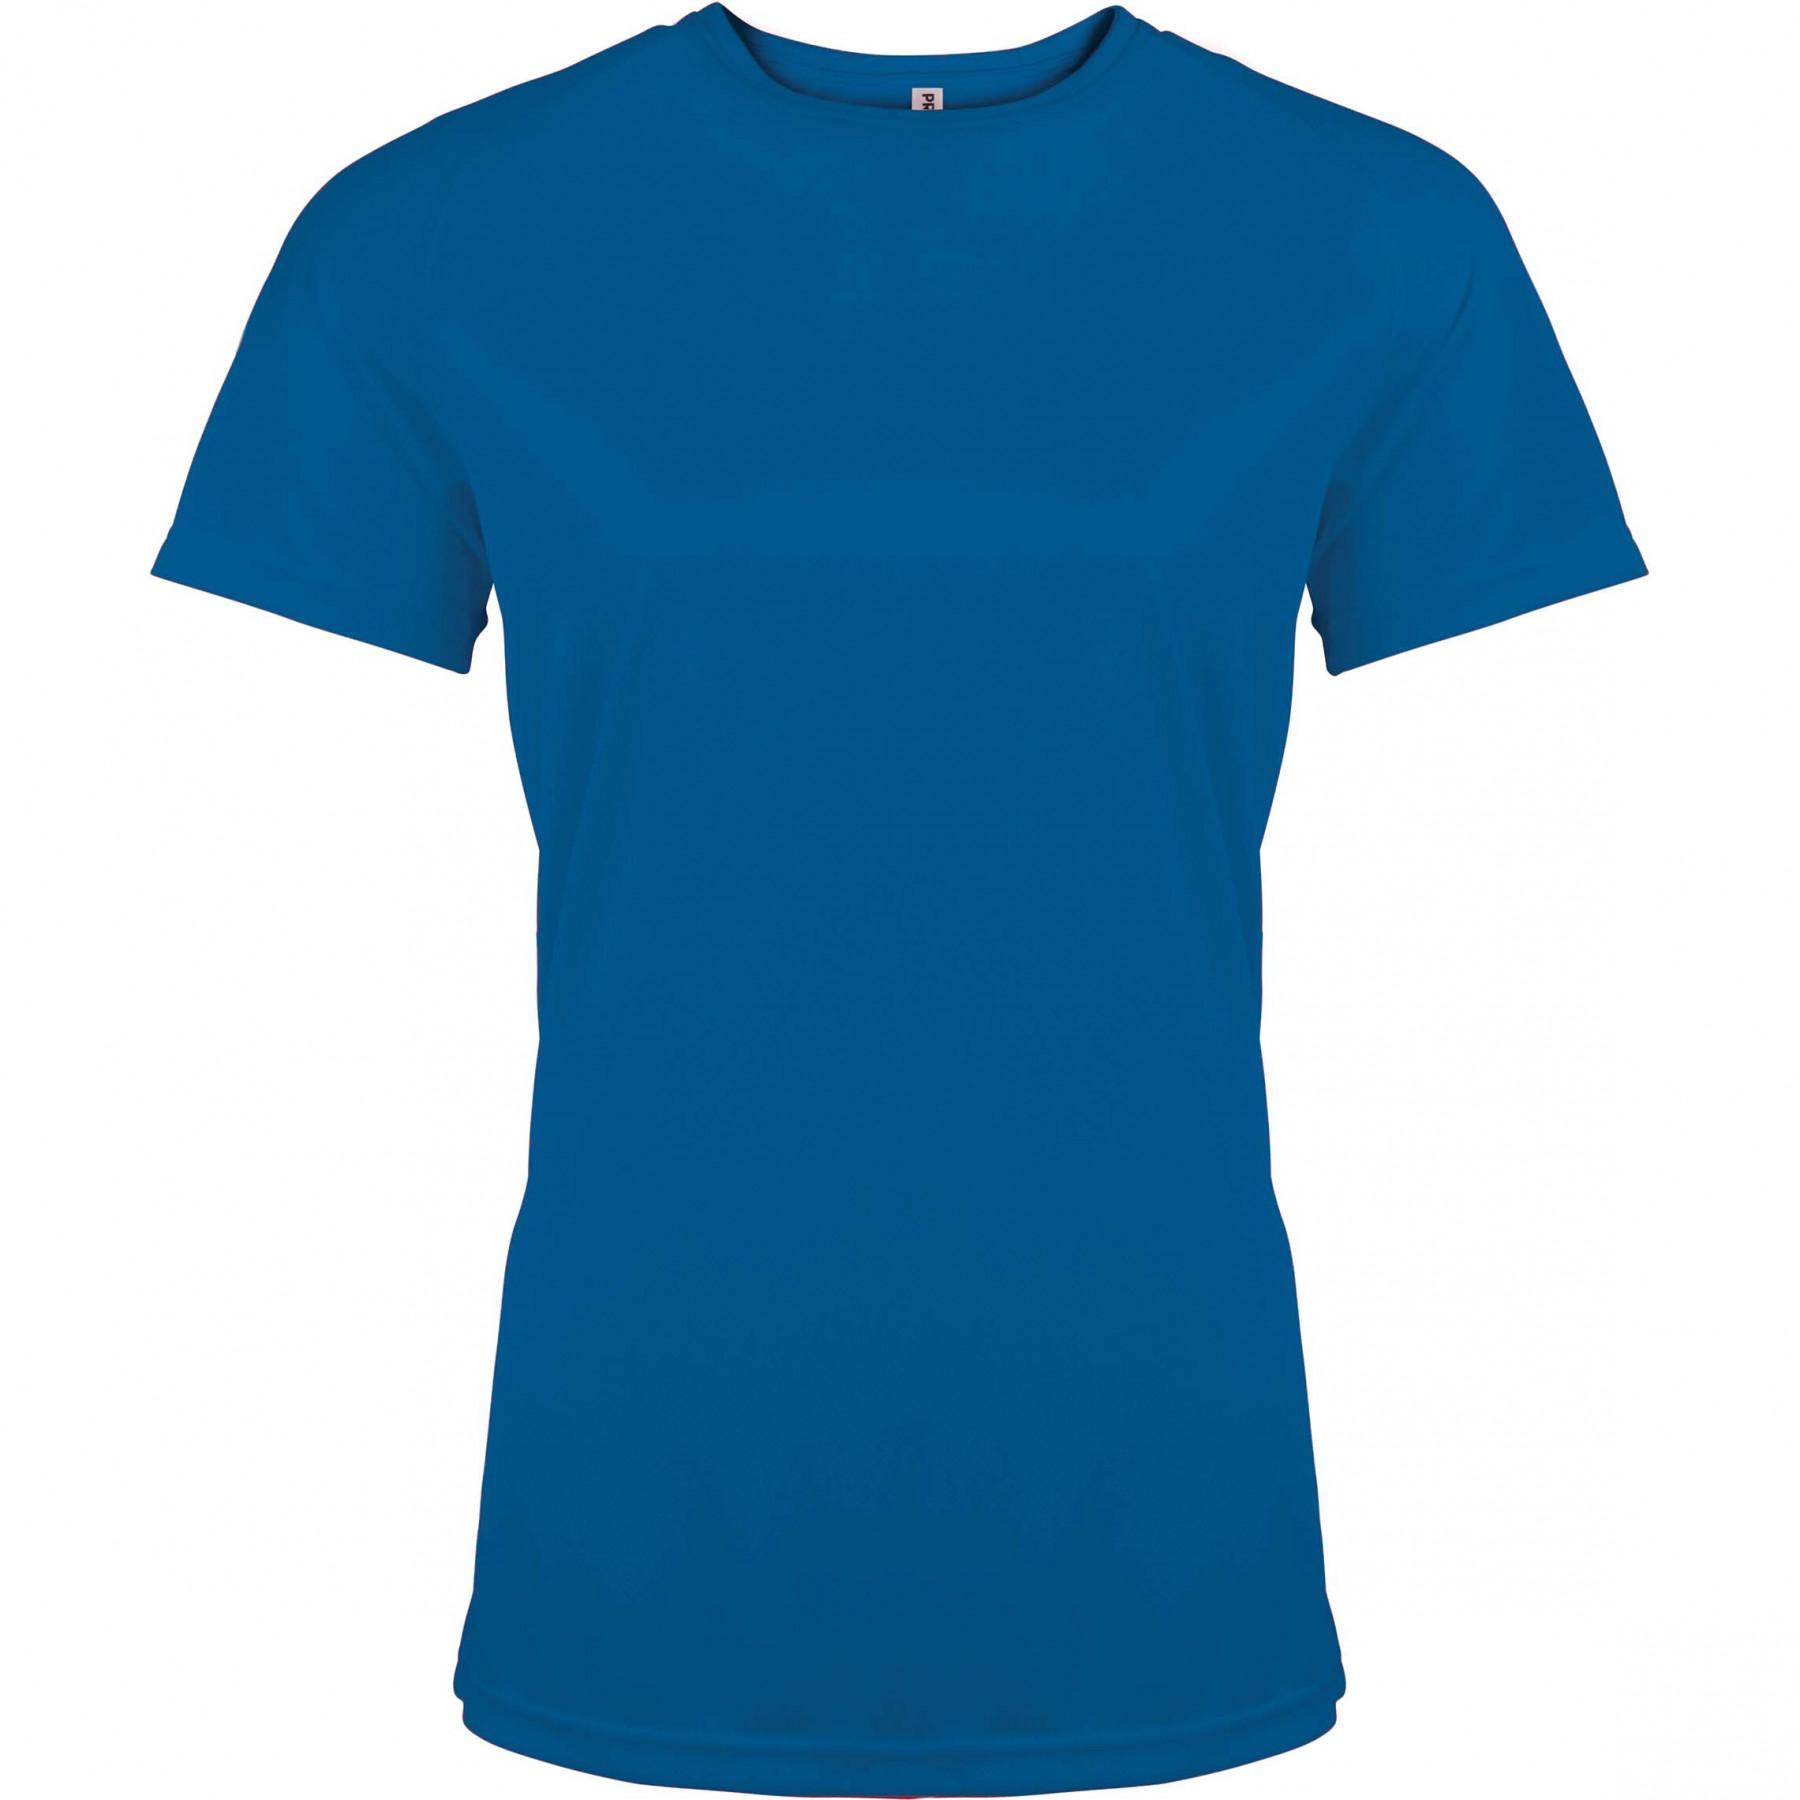 Camiseta mujer mangas cortas Proact Sport